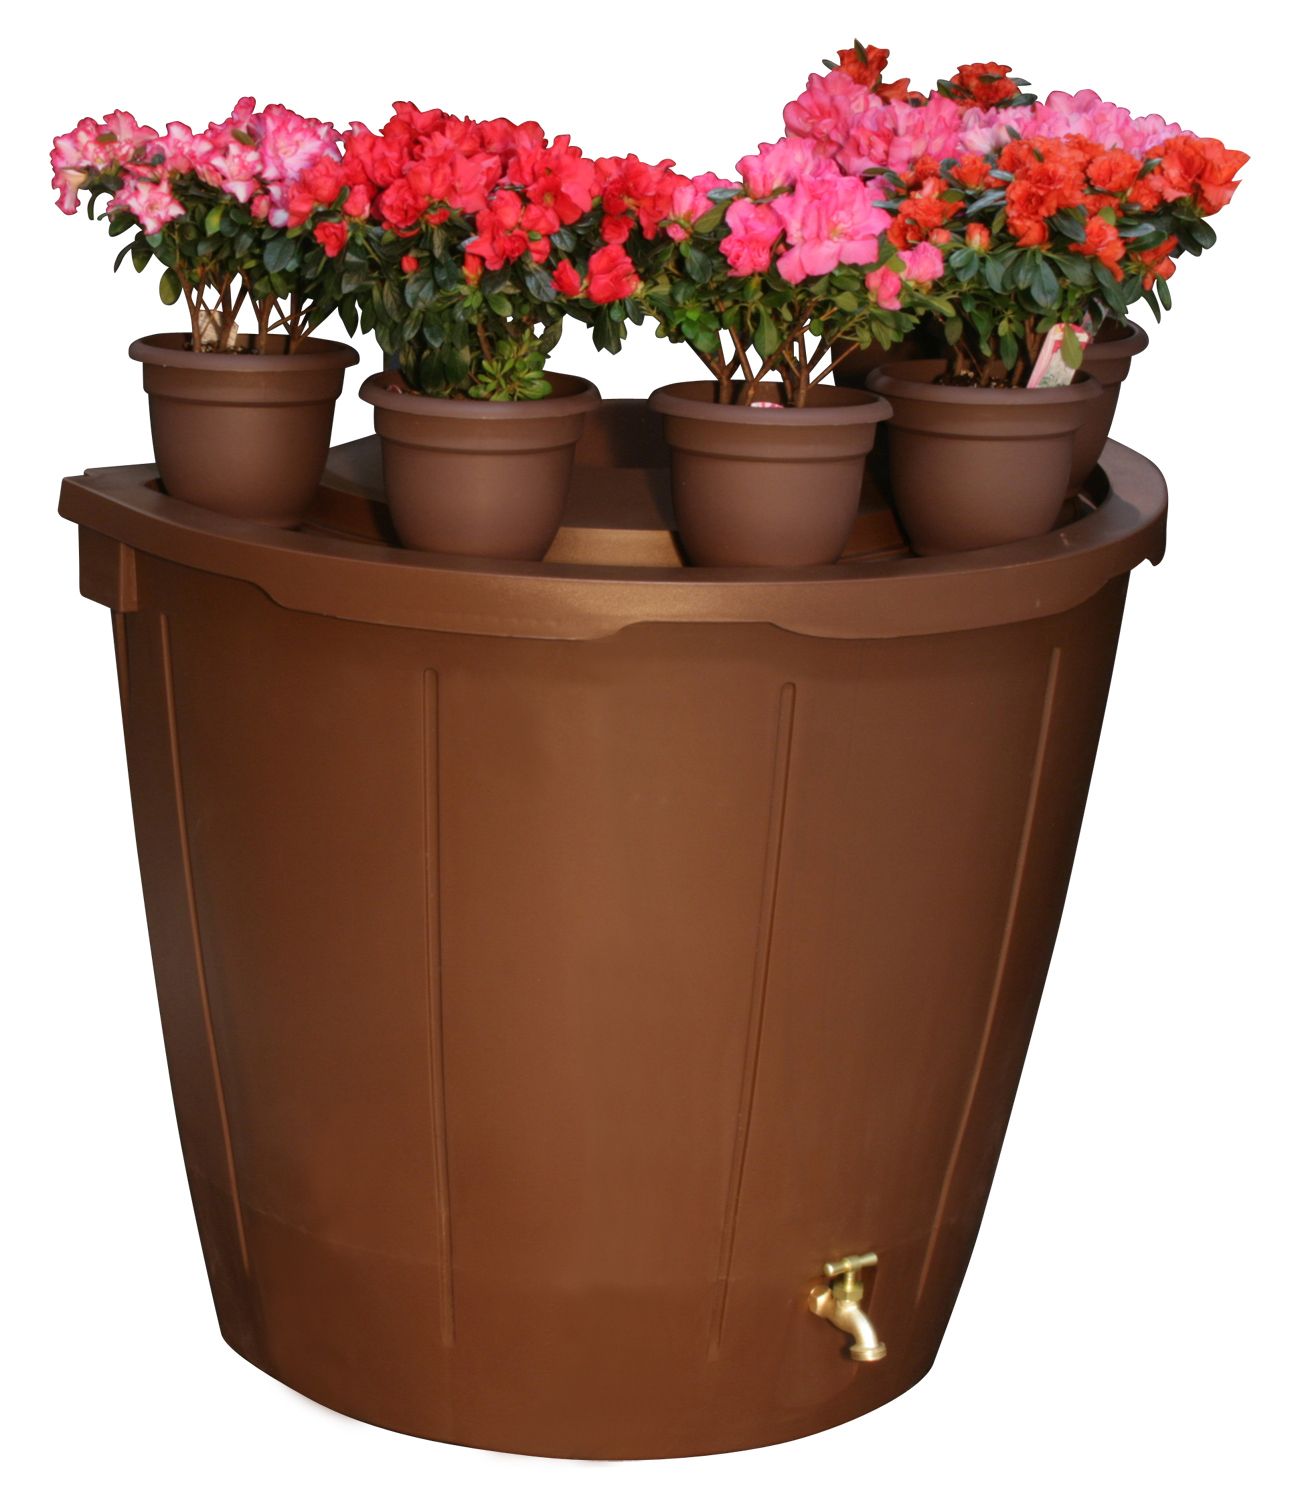 Koolscapes 50 Gallon Decorative Rain Barrel with 5 planter pots